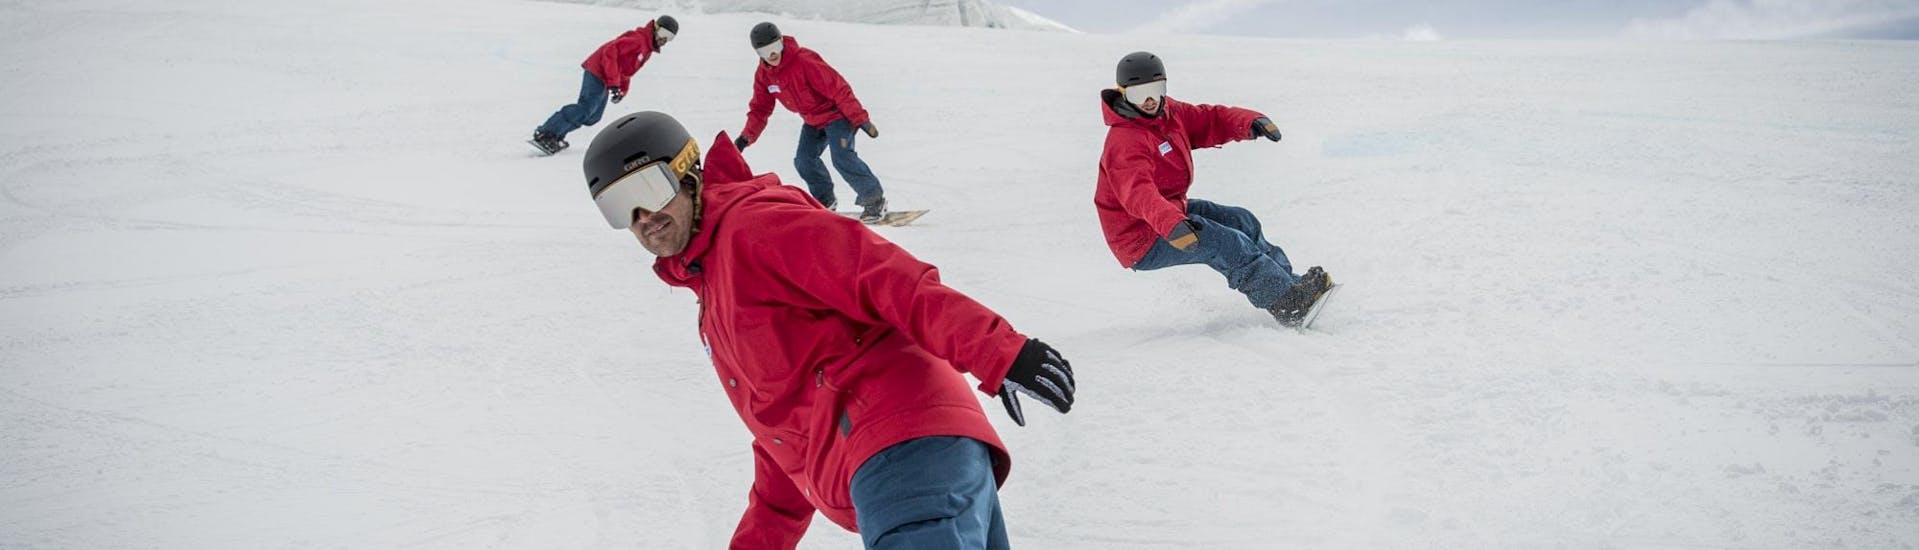 Snowboardlessen voor volwassenen voor gevorderde boarders.